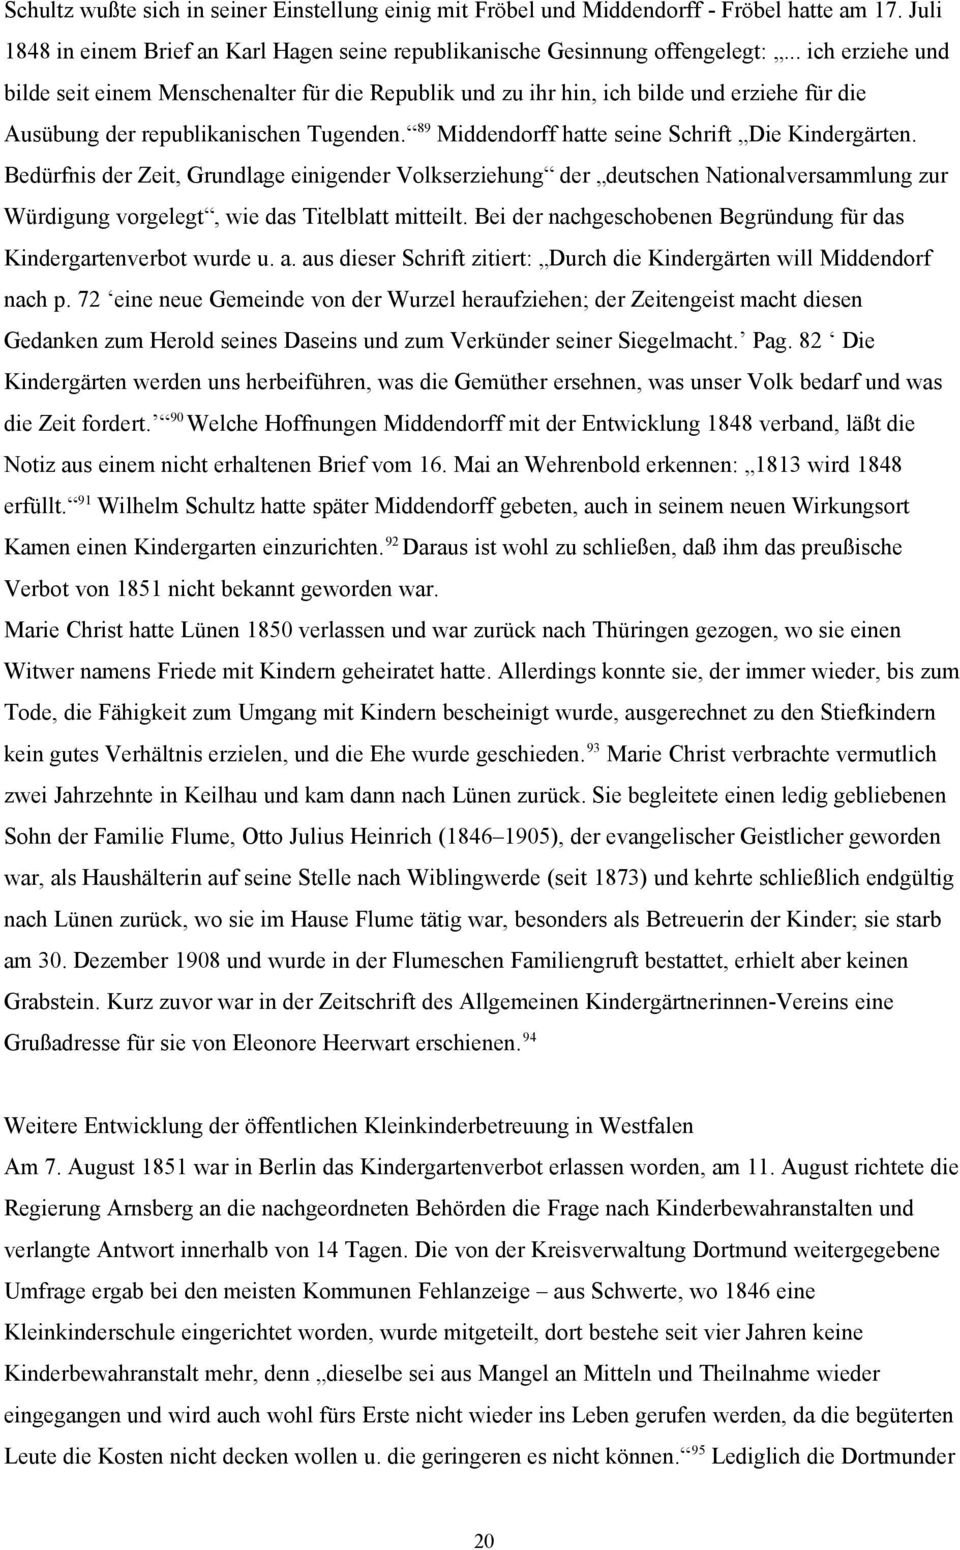 89 Middendorff hatte seine Schrift Die Kindergärten. Bedürfnis der Zeit, Grundlage einigender Volkserziehung der deutschen Nationalversammlung zur Würdigung vorgelegt, wie das Titelblatt mitteilt.